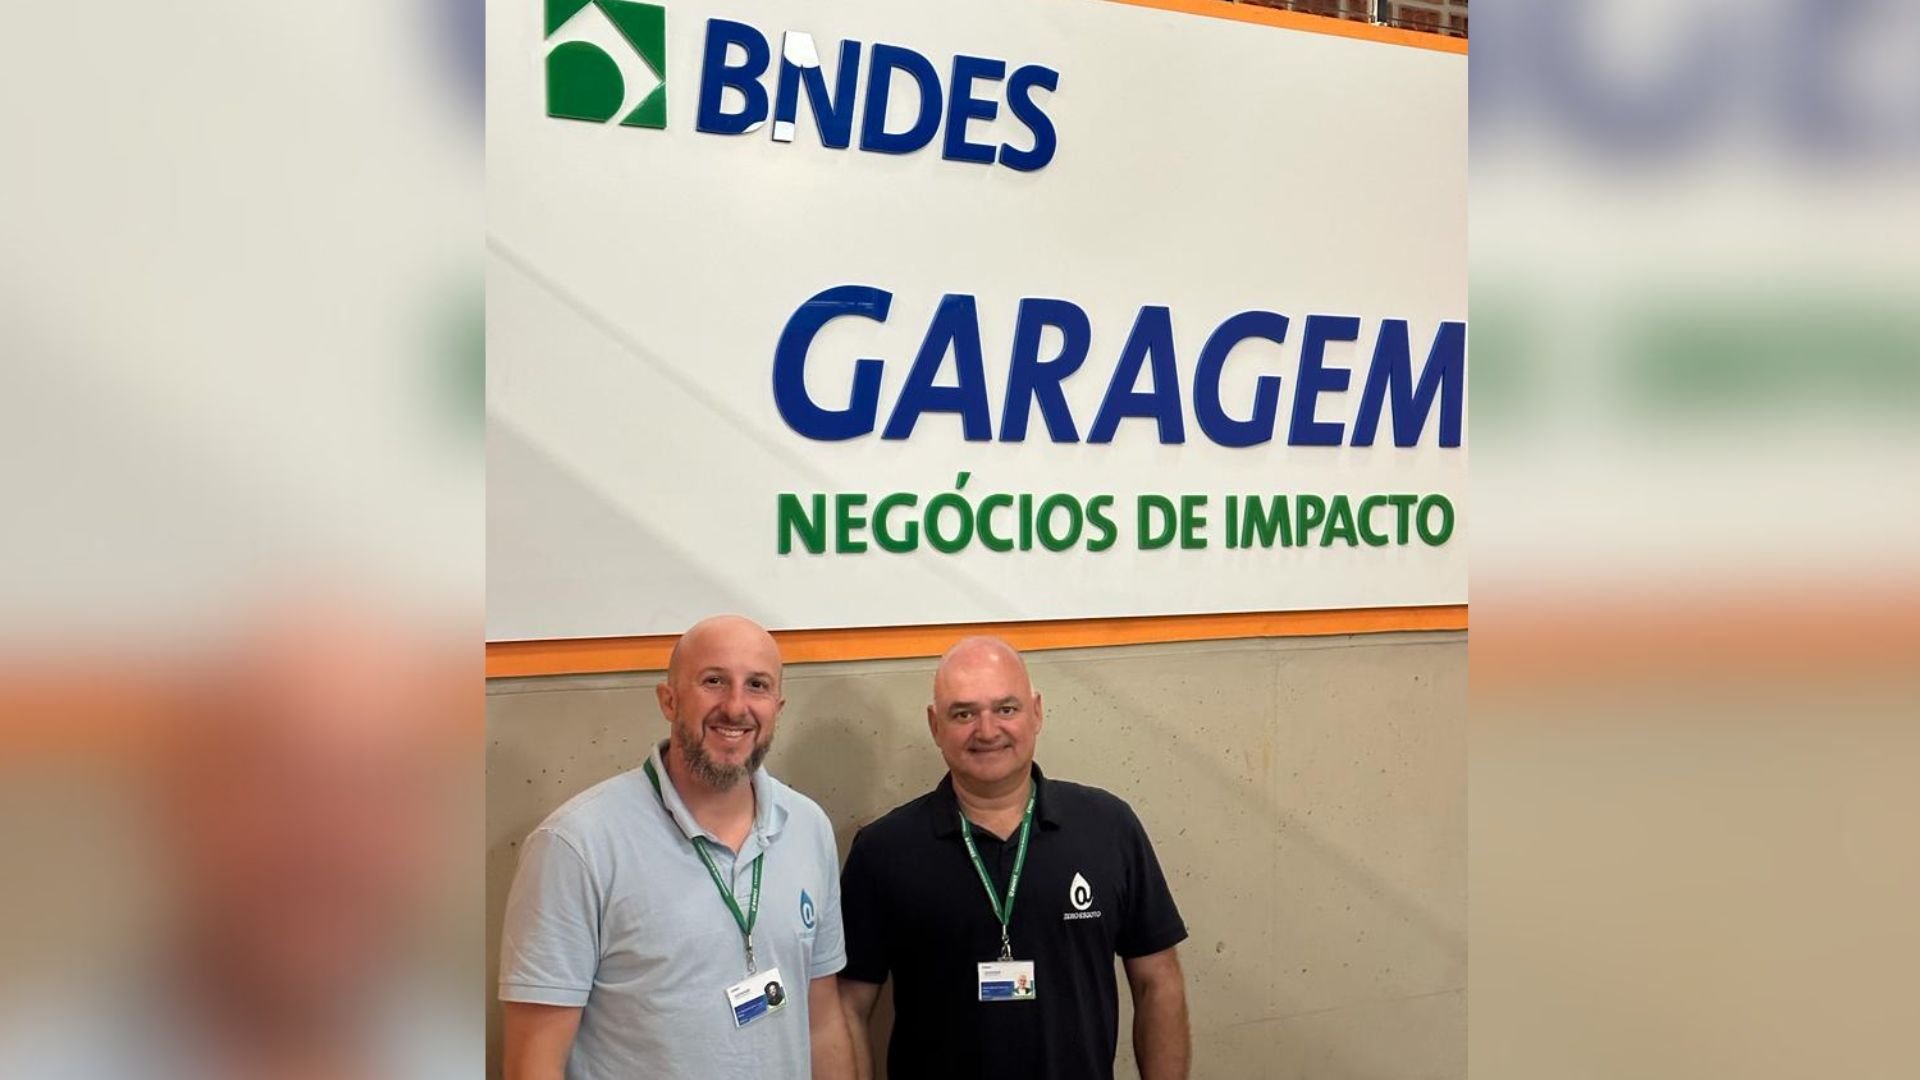 Zero Esgoto, que atua no ramo de biotecnologia para saneamento básico, está entre as sete escolhidas pelo BNDES Garagem